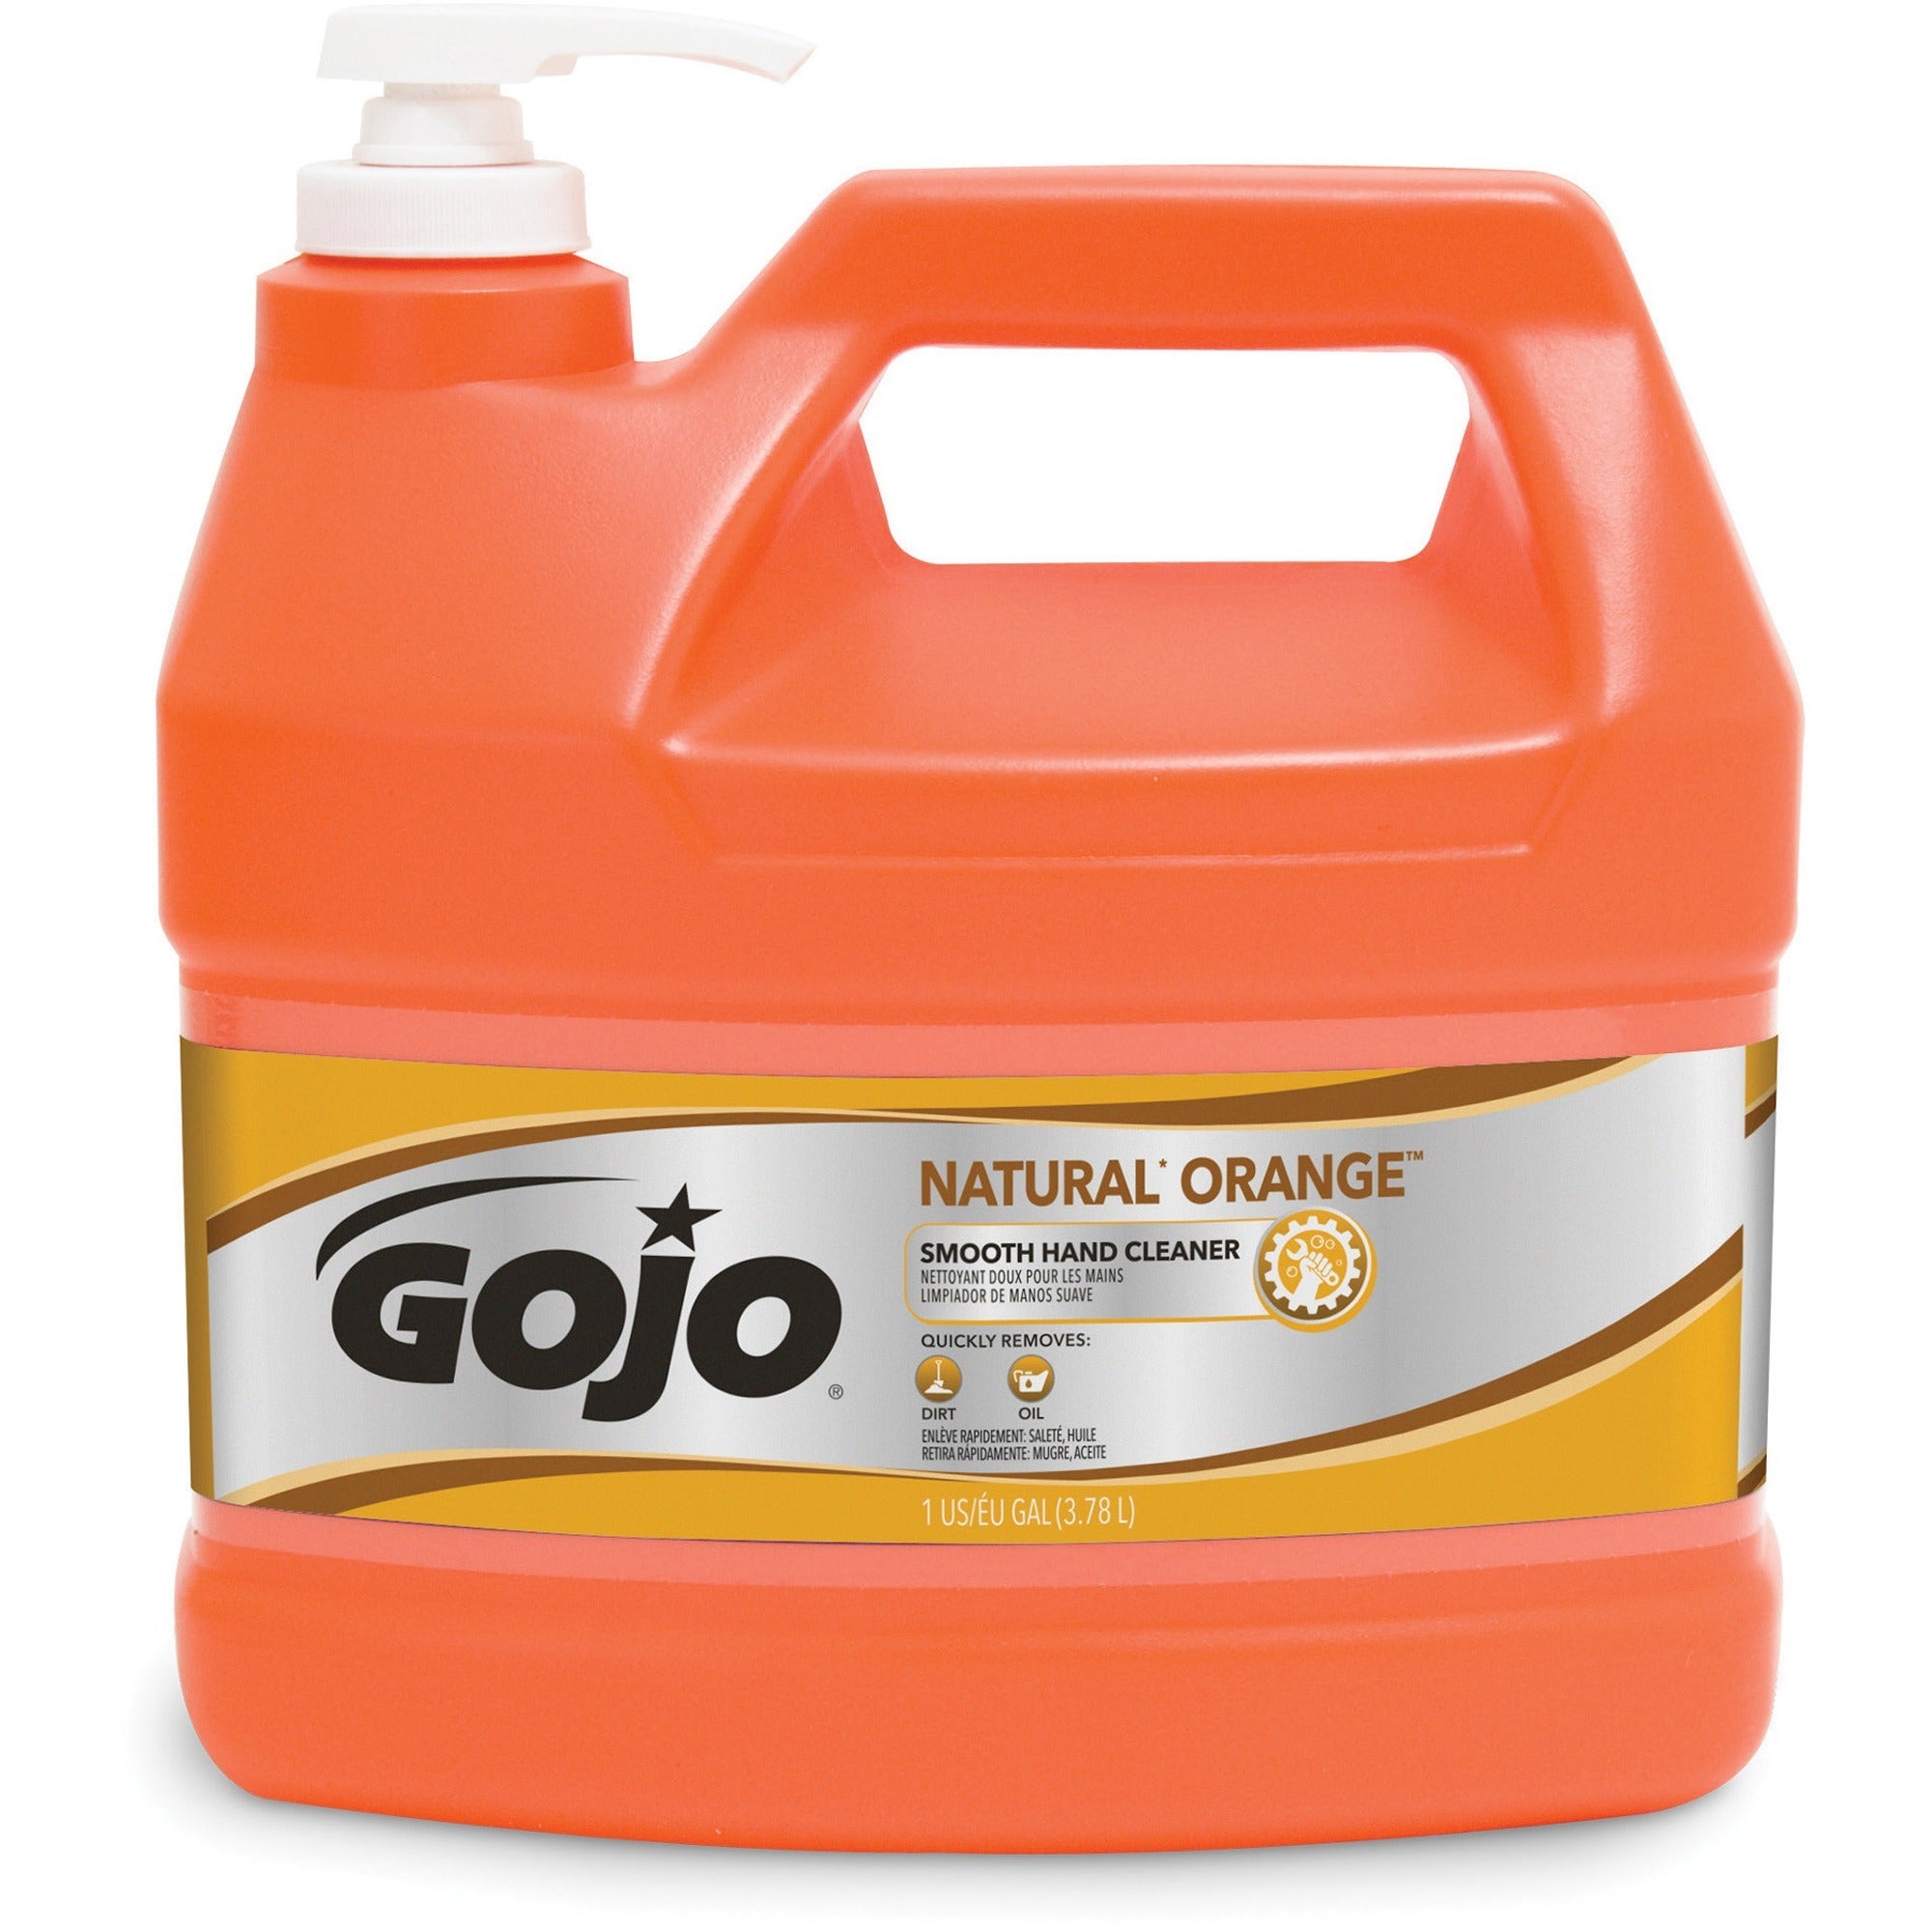 gojo-natural-orange-smooth-hand-cleaner-citrus-scentfor-1-gal-38-l-pump-bottle-dispenser-soil-remover-dirt-remover-grease-remover-hand-orange-4-carton_goj094504ct - 2